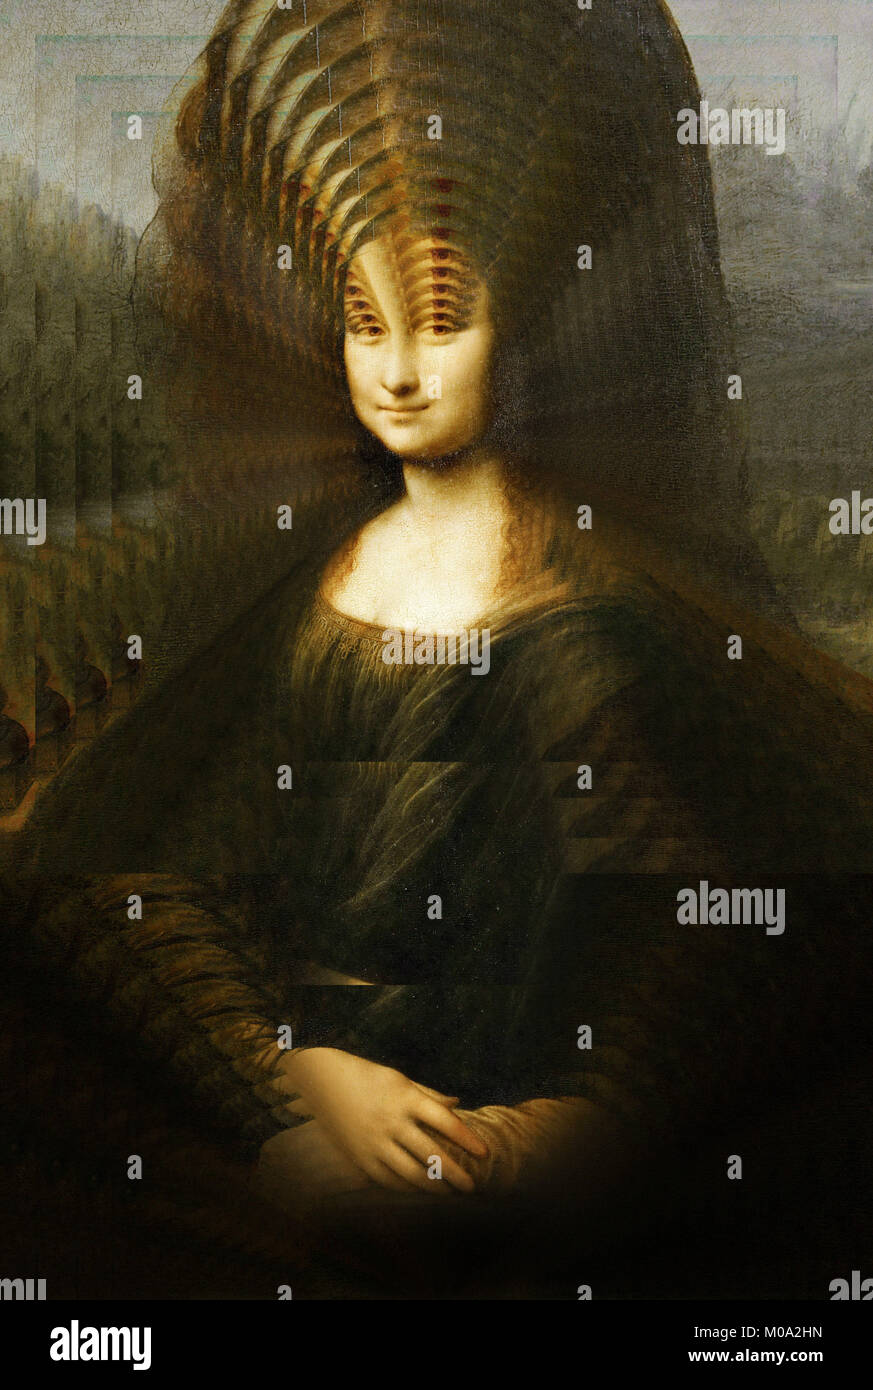 Modification de l'artistique célèbre portrait de Mona Lisa de Leonardo da Vinci Banque D'Images